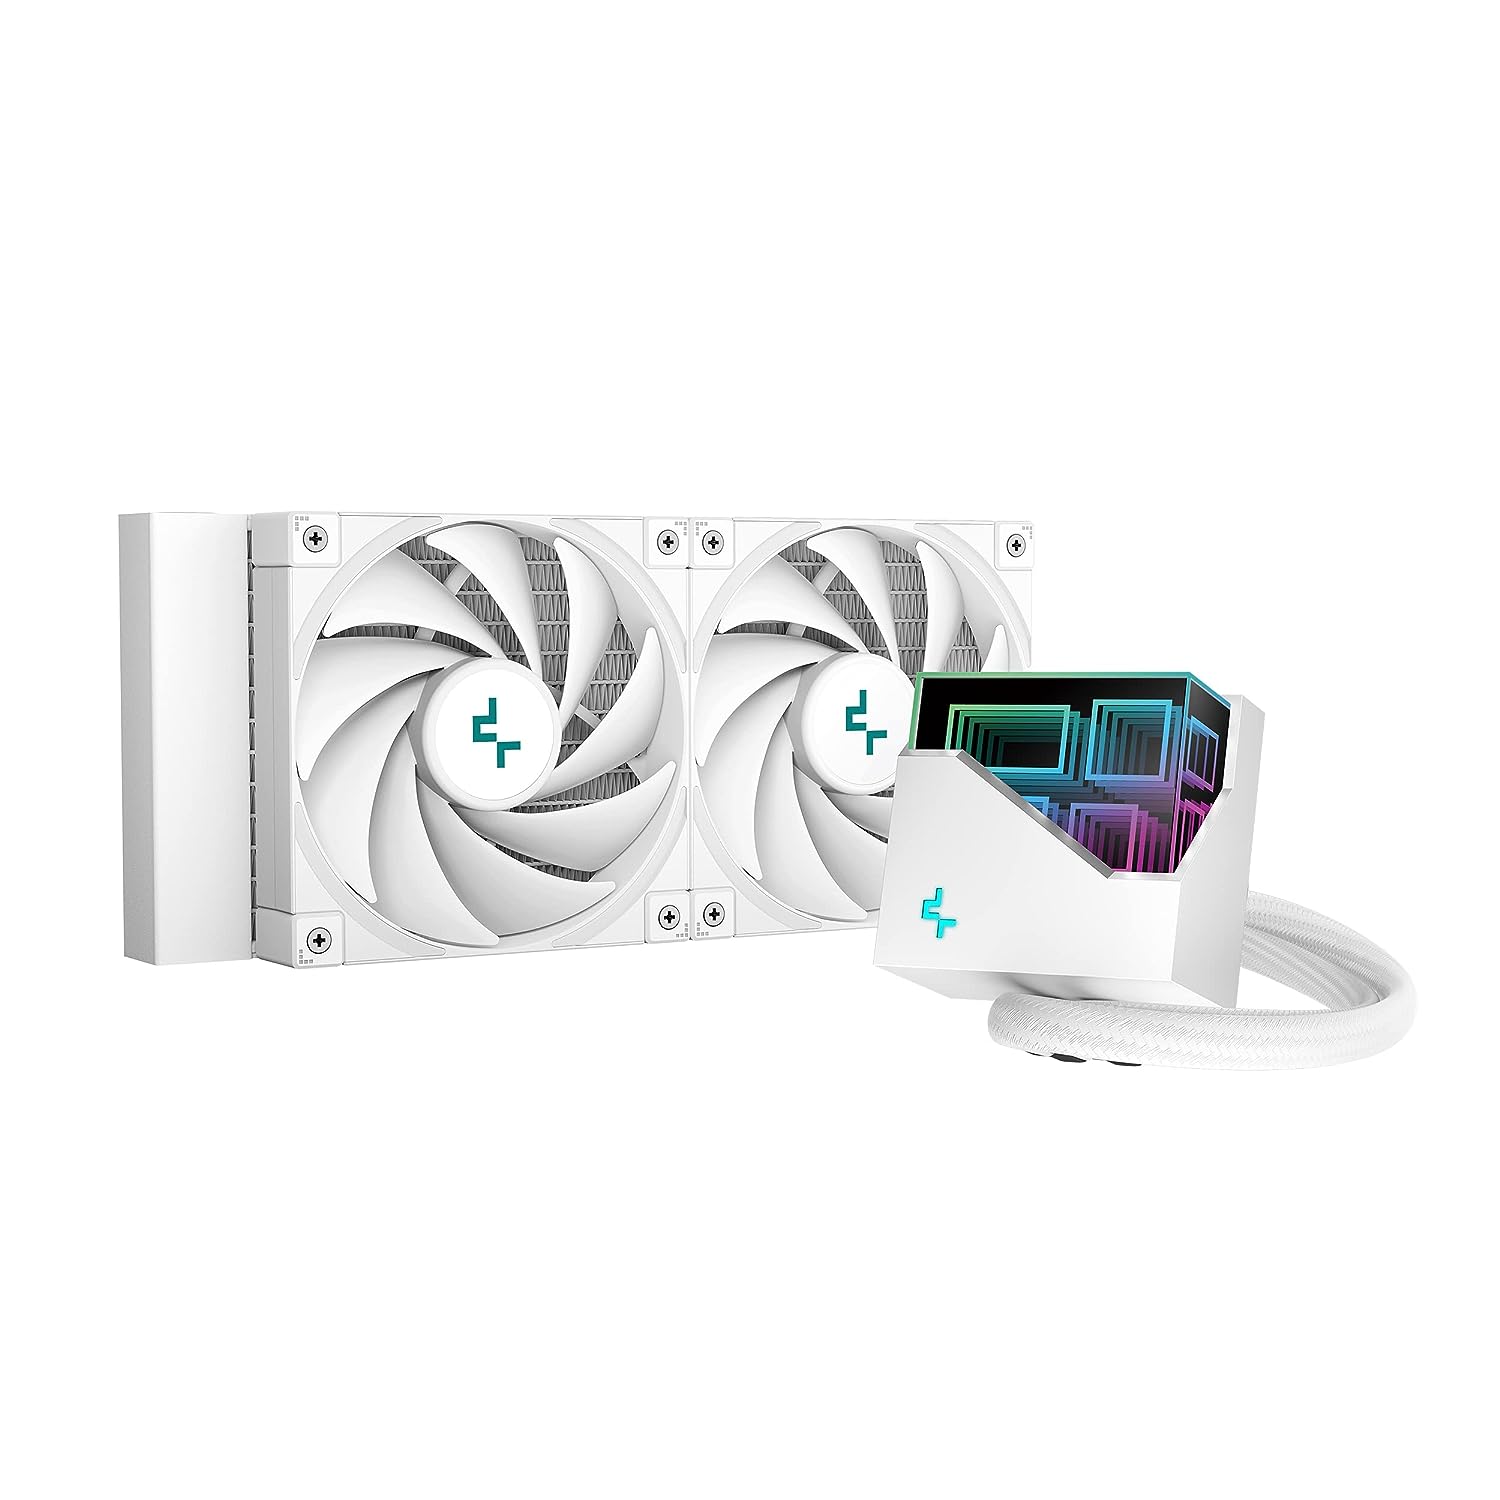 DeepCool Liquid Cooler LT520 240mm White - Geek Tech